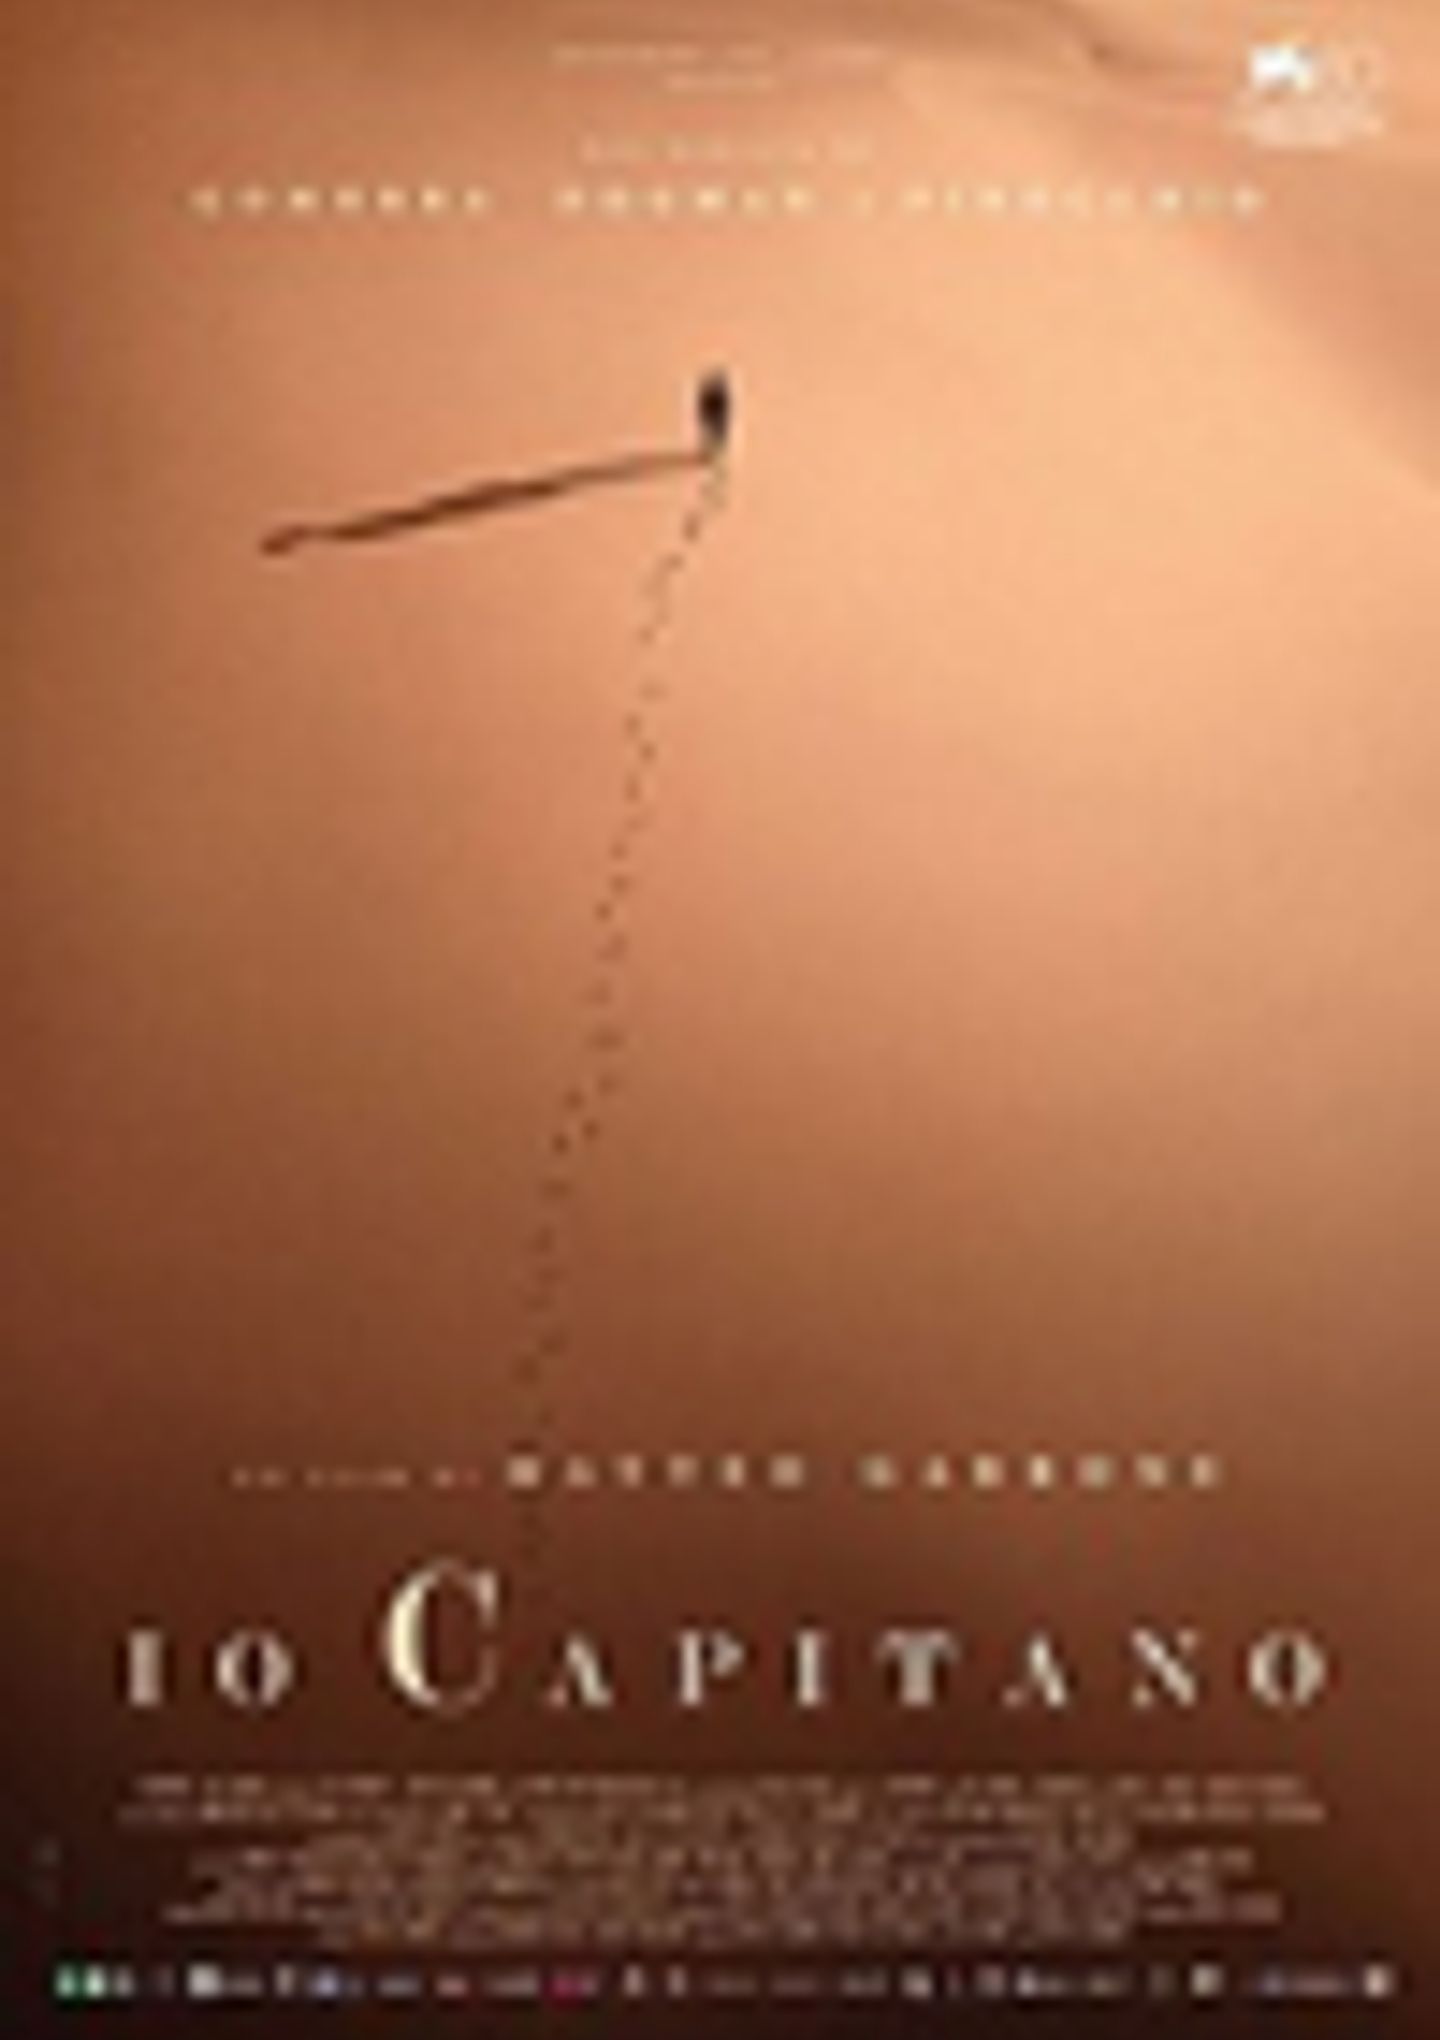 Plakat for 'Io Capitano'